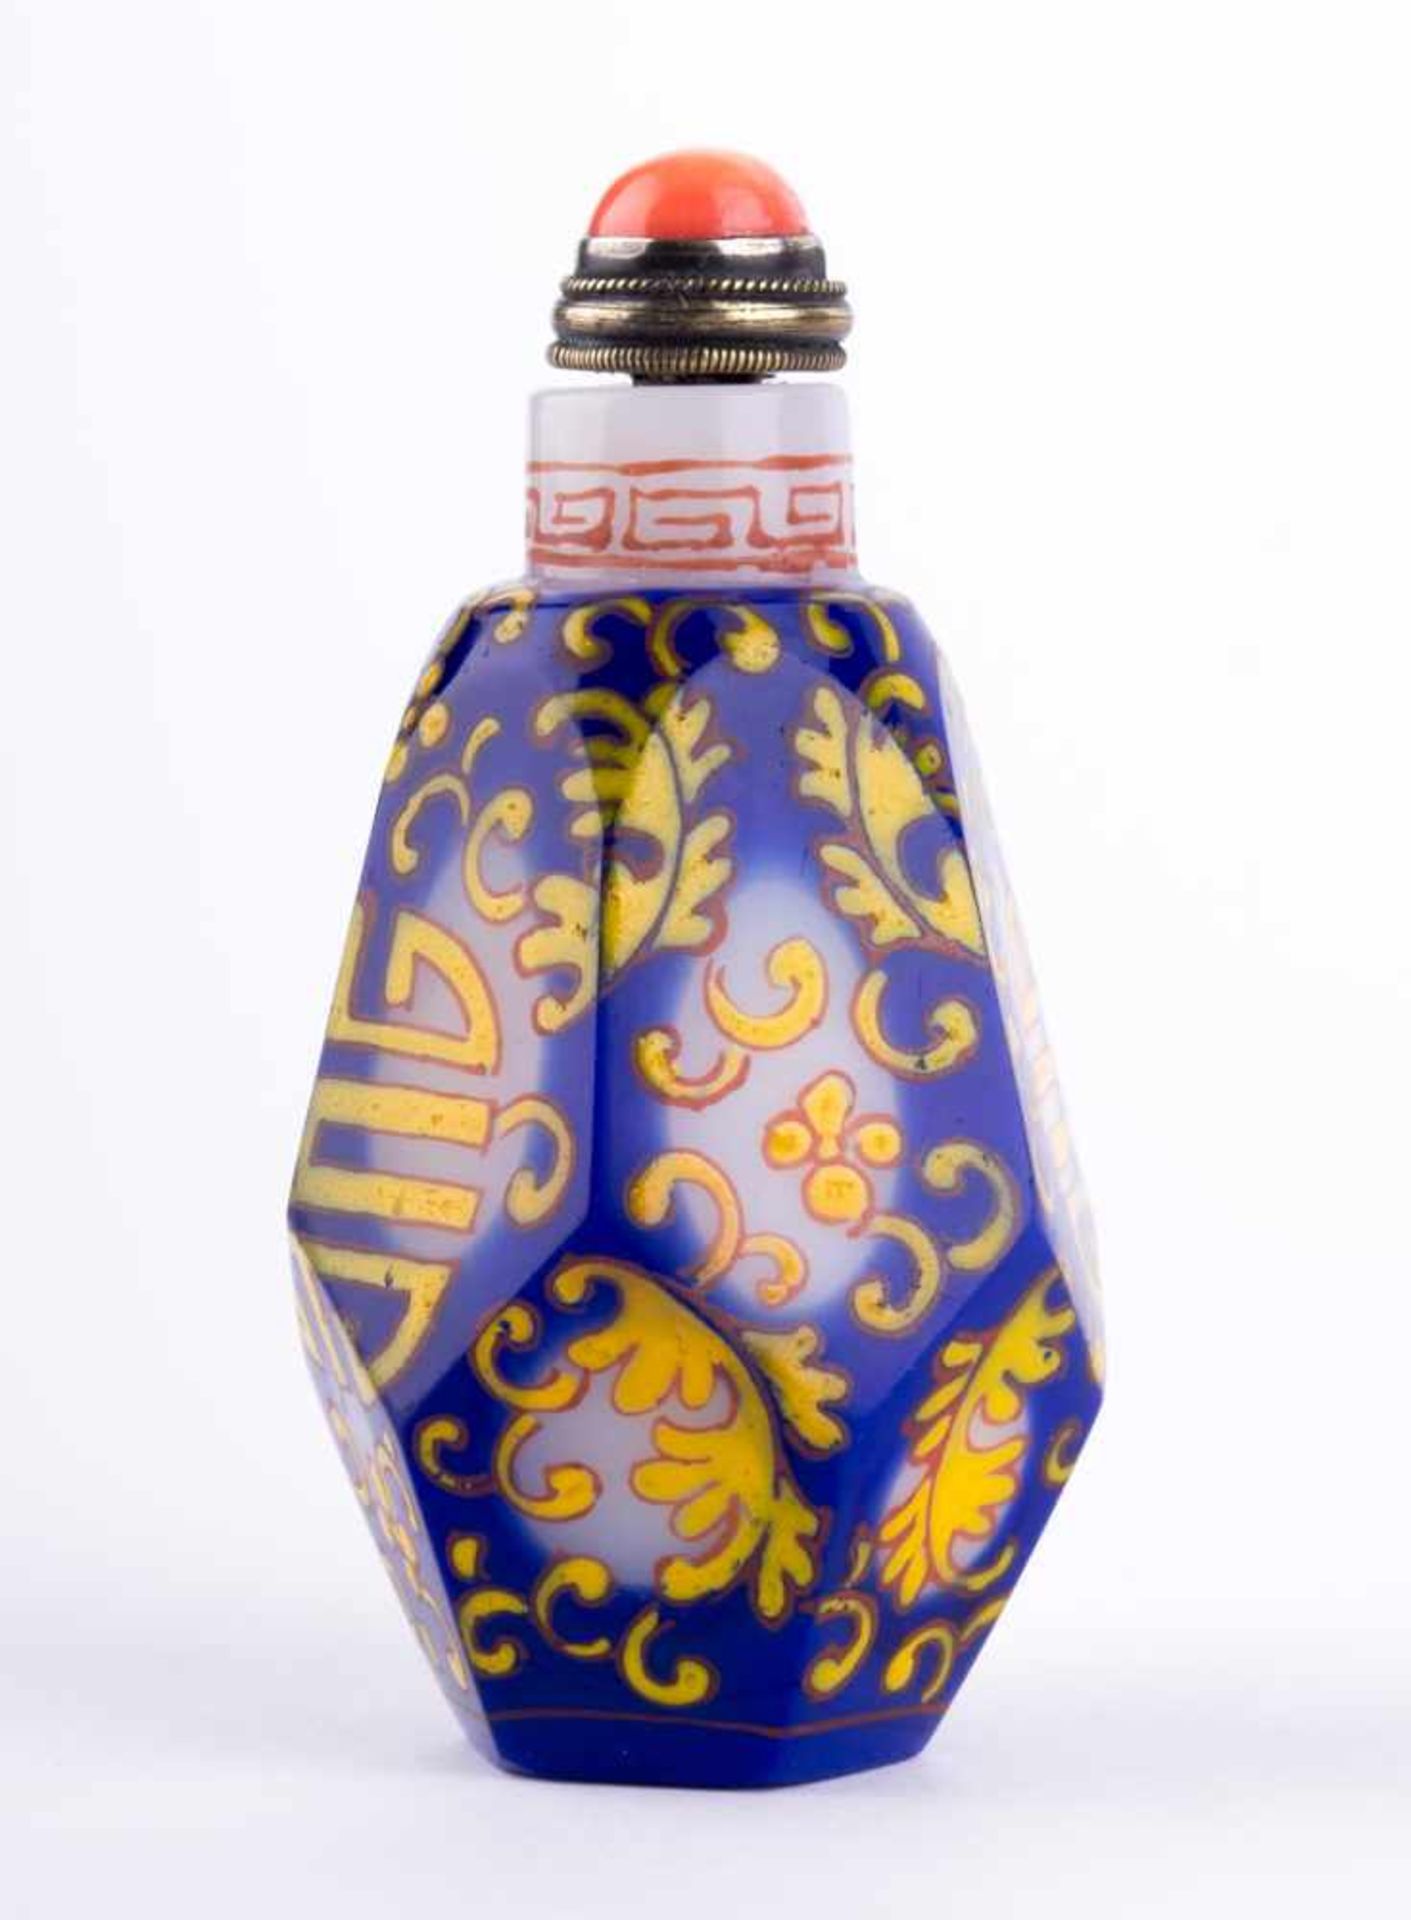 Snuffbottle China um 1900 Milchglas, farbig staffiert, Verschluß mit Koralle, H: ca. 70 mm, - Bild 2 aus 4